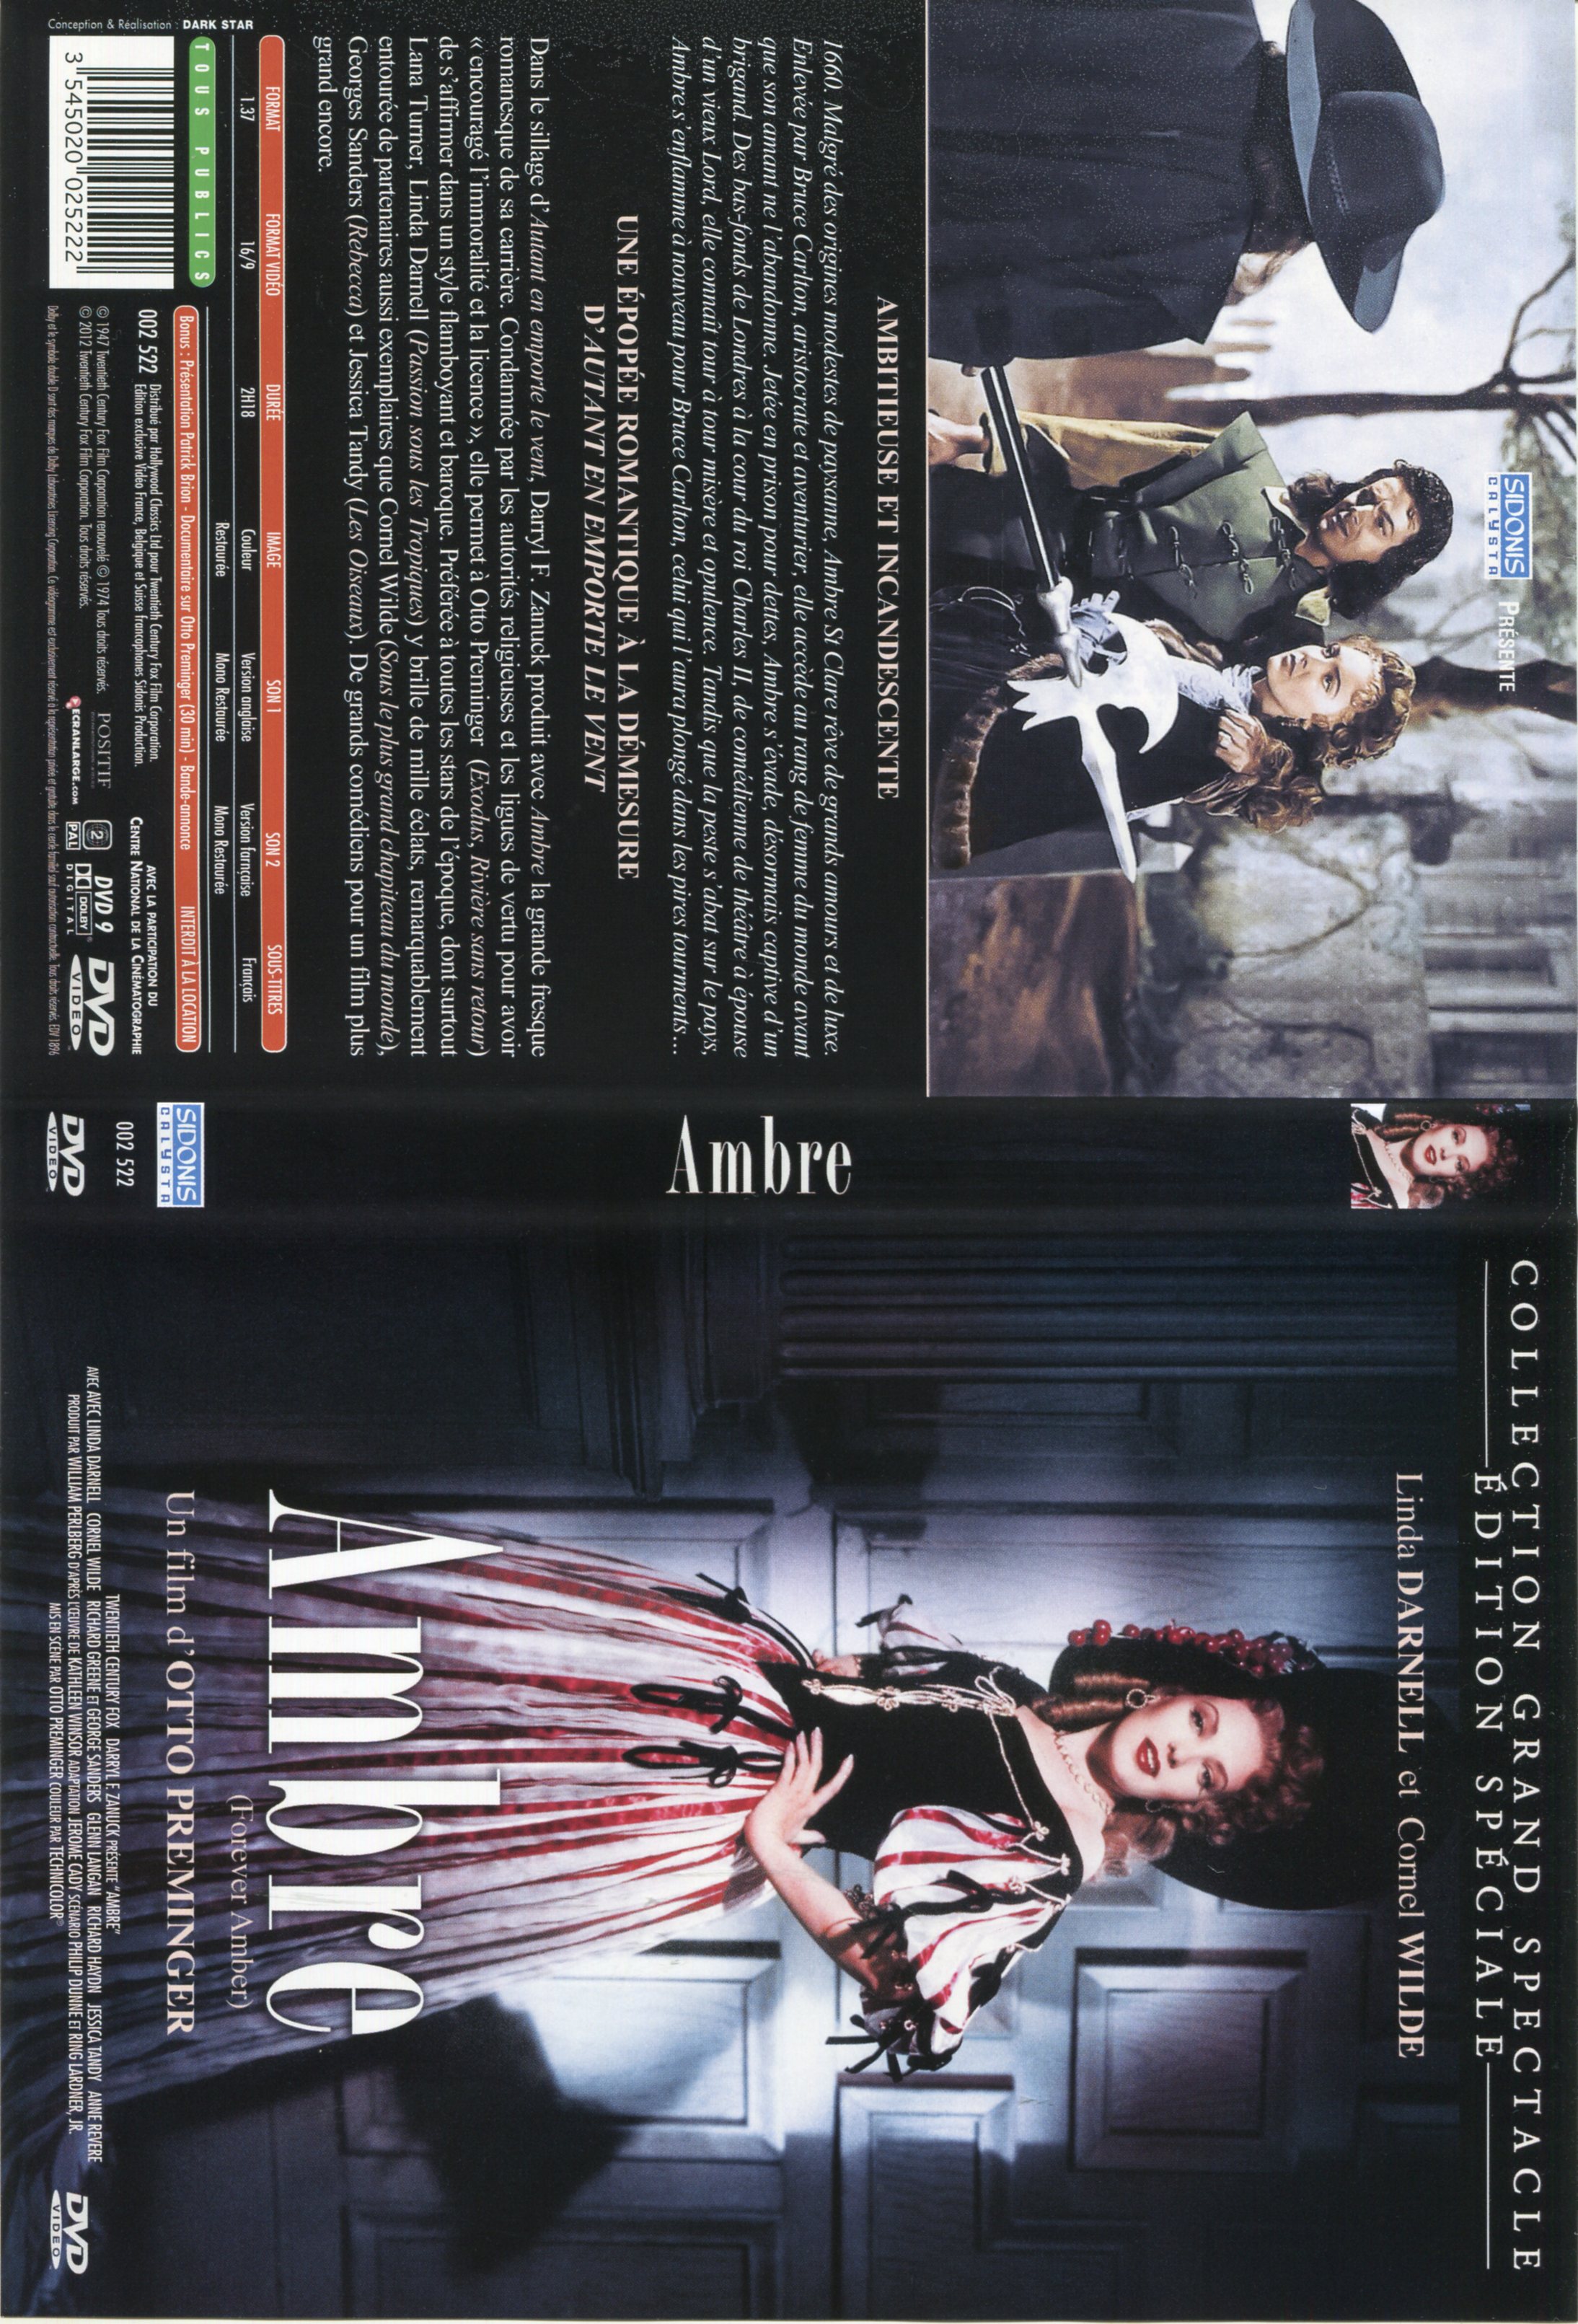 Jaquette DVD Ambre